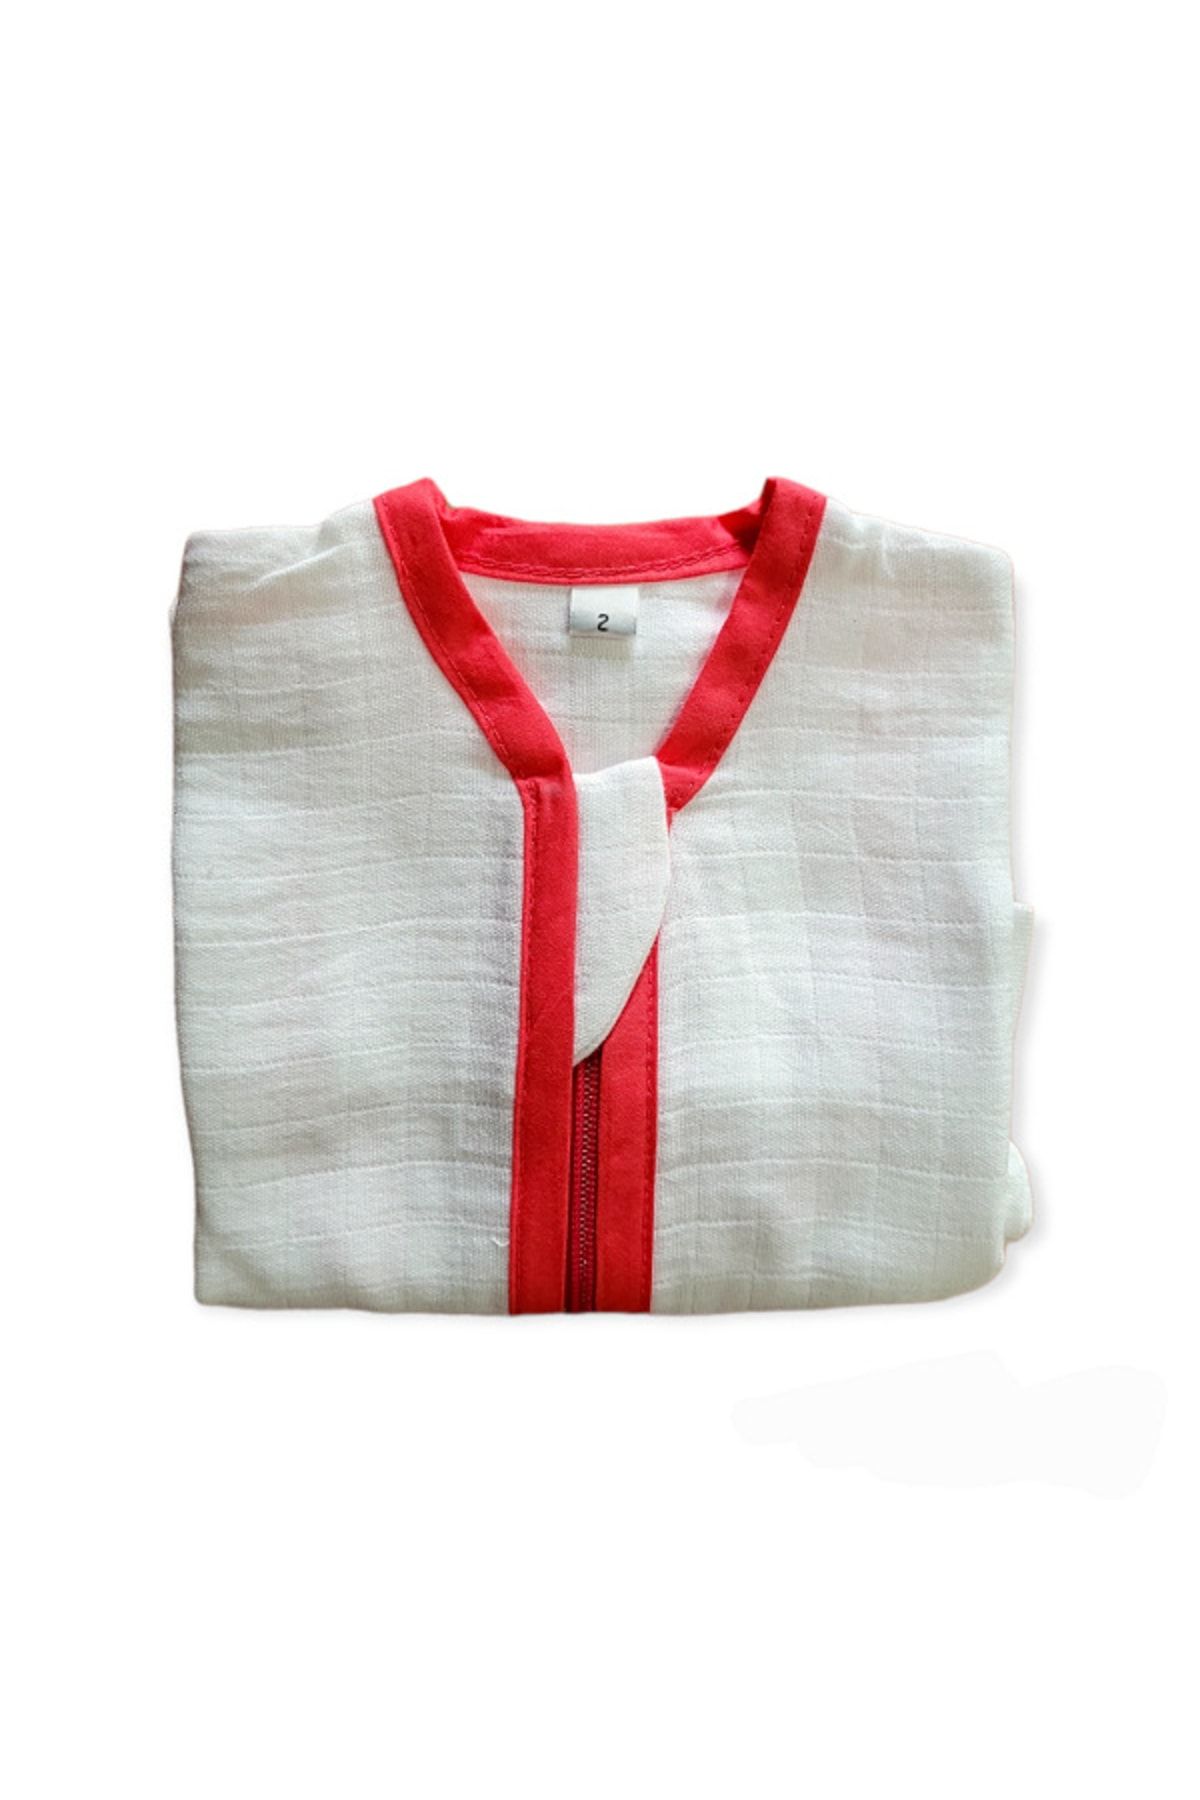 Alpar Tekstil Yazlık & Baharlık Tek Katlı Müslin Uyku Tulumu 0,5 Tog/kırmızı Biyeli Beyaz